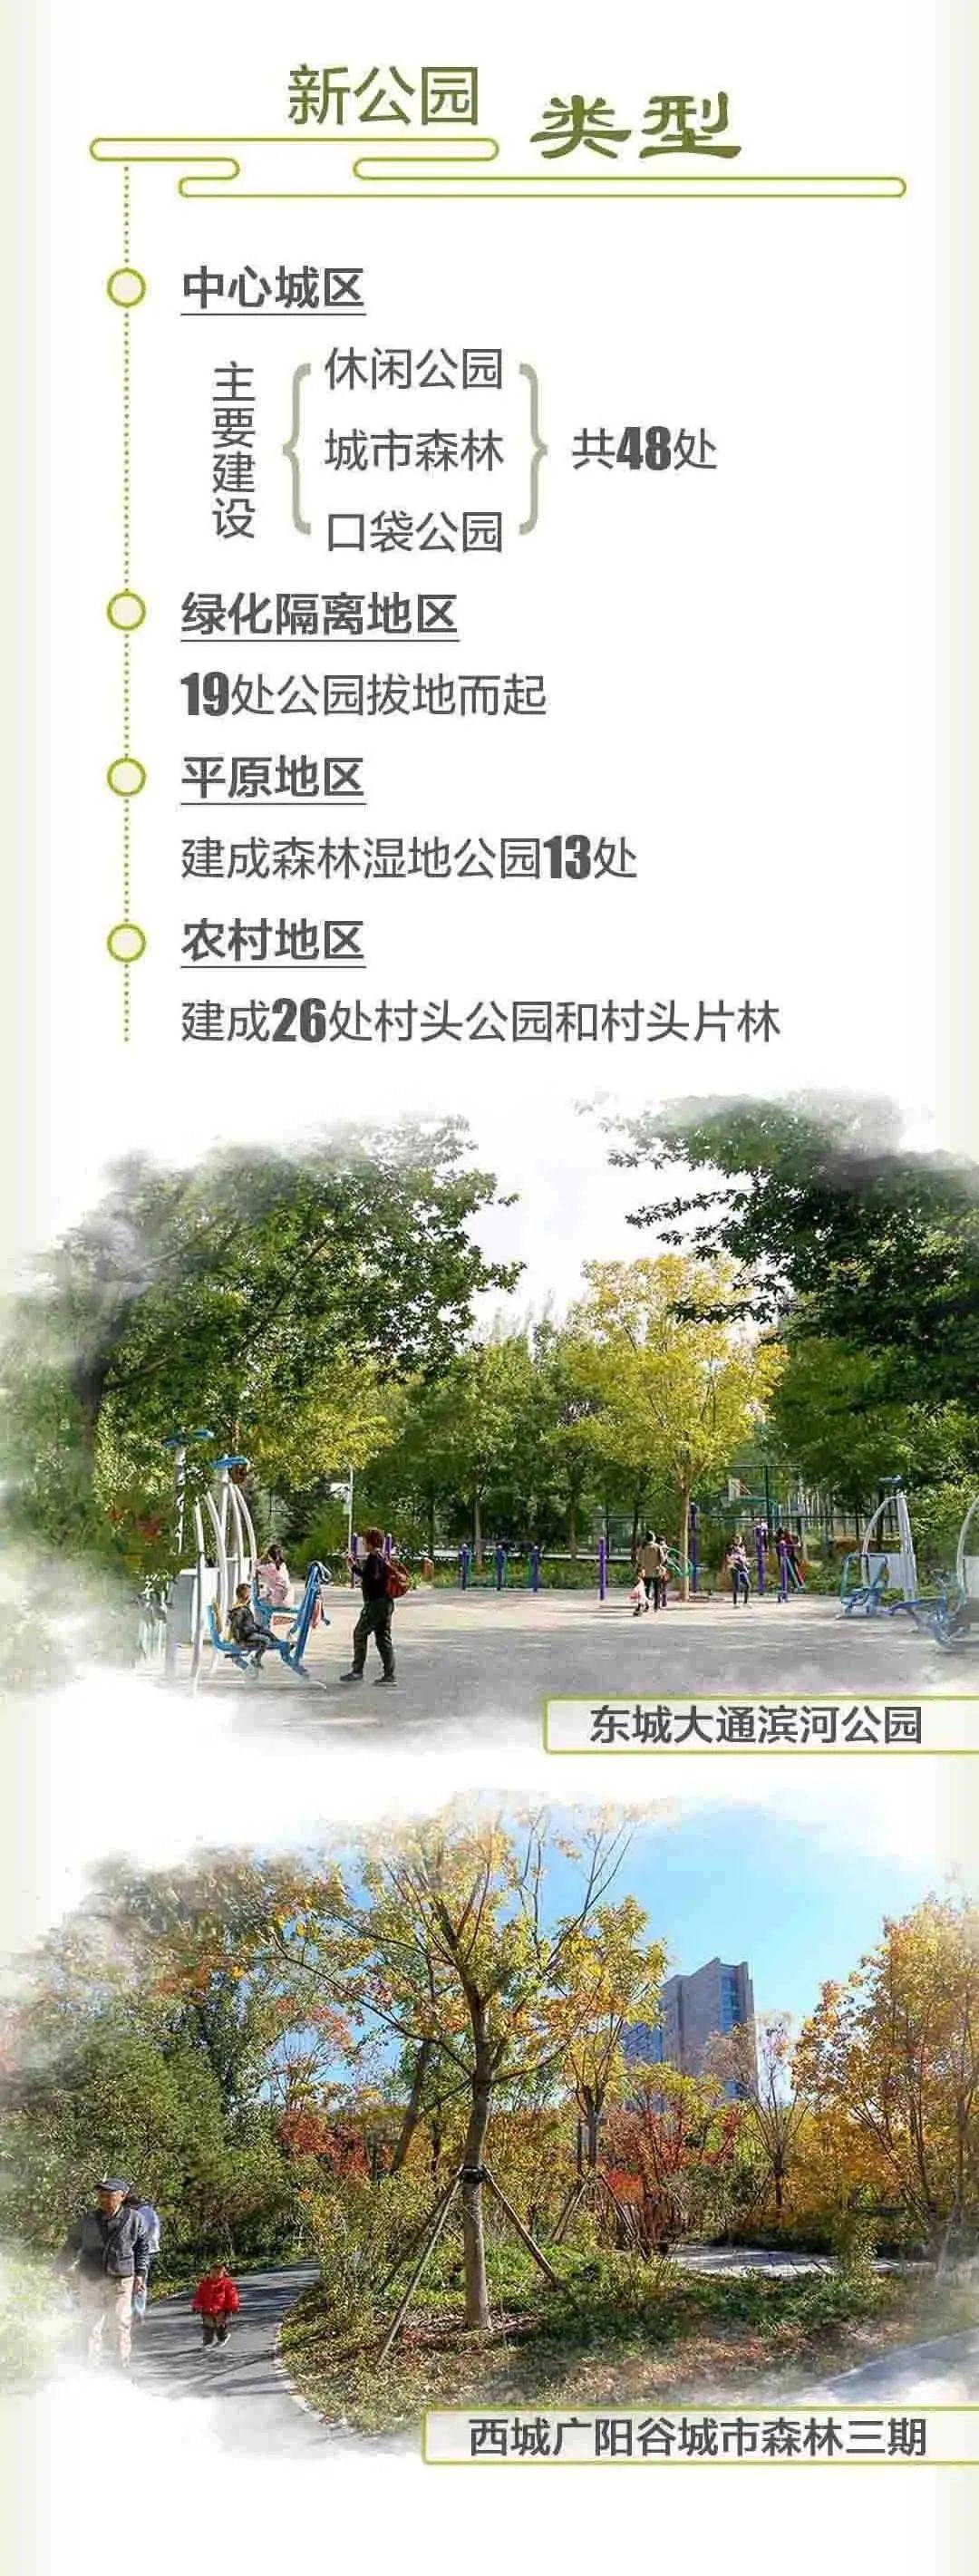 北京新增106个公园，春天到了快一起去感受吧